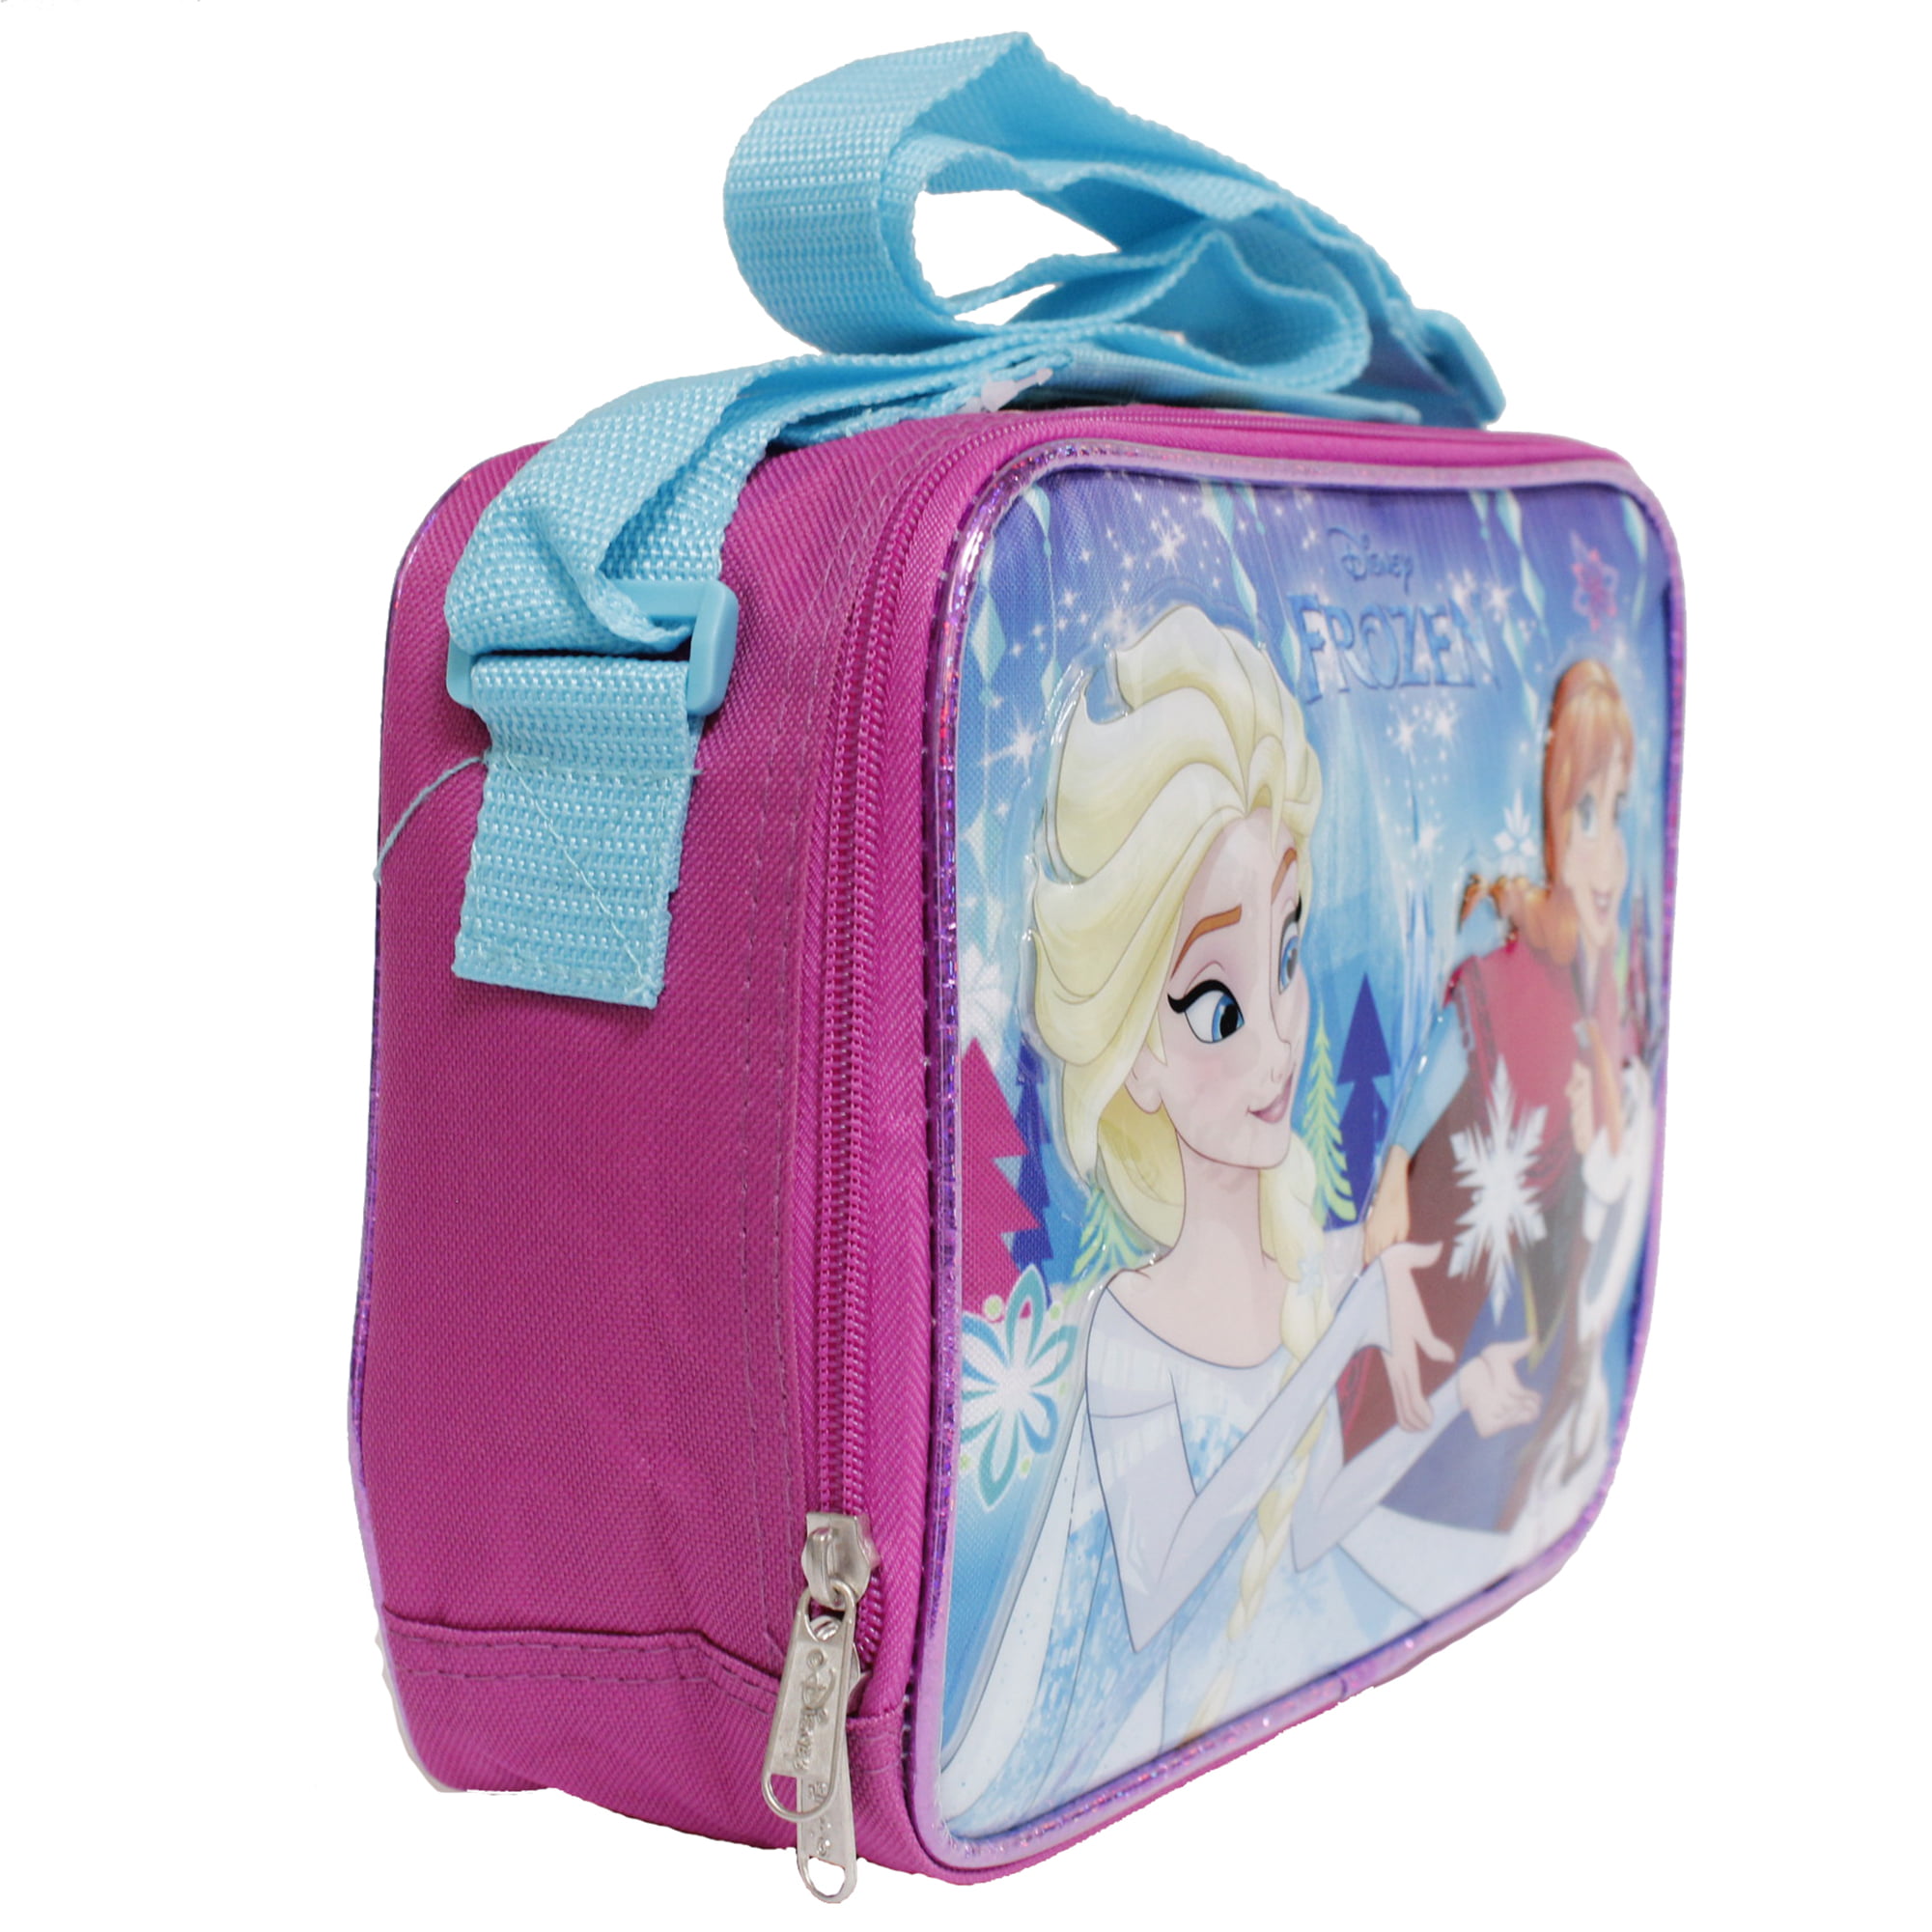 Disney Frozen Lunchbox Olaf Design Insulated School Lunch Bag Girls Boys 